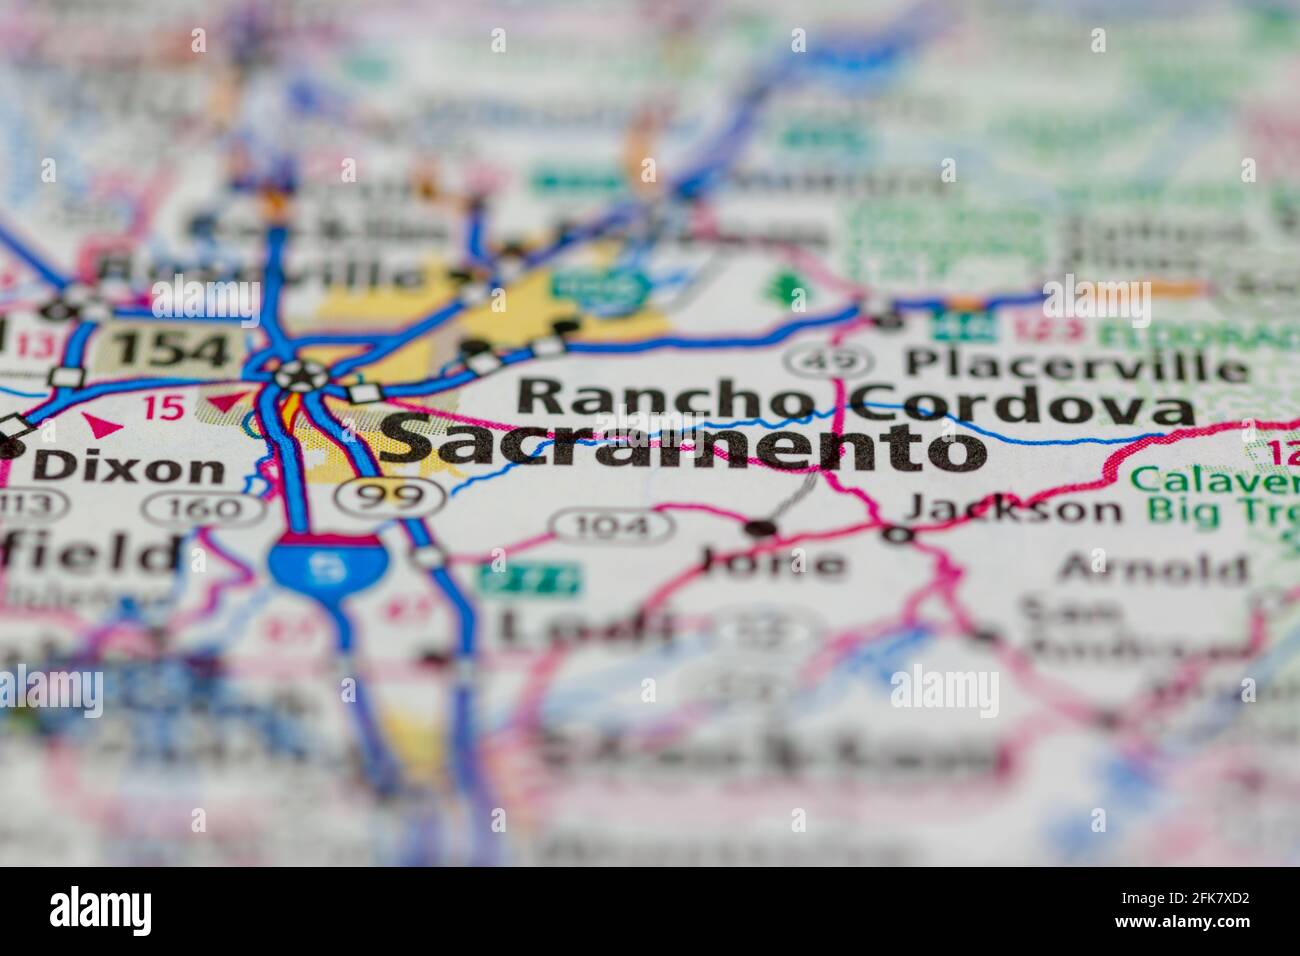 Sacramento California USA indiqué sur une carte de la géographie ou sur une route carte Banque D'Images